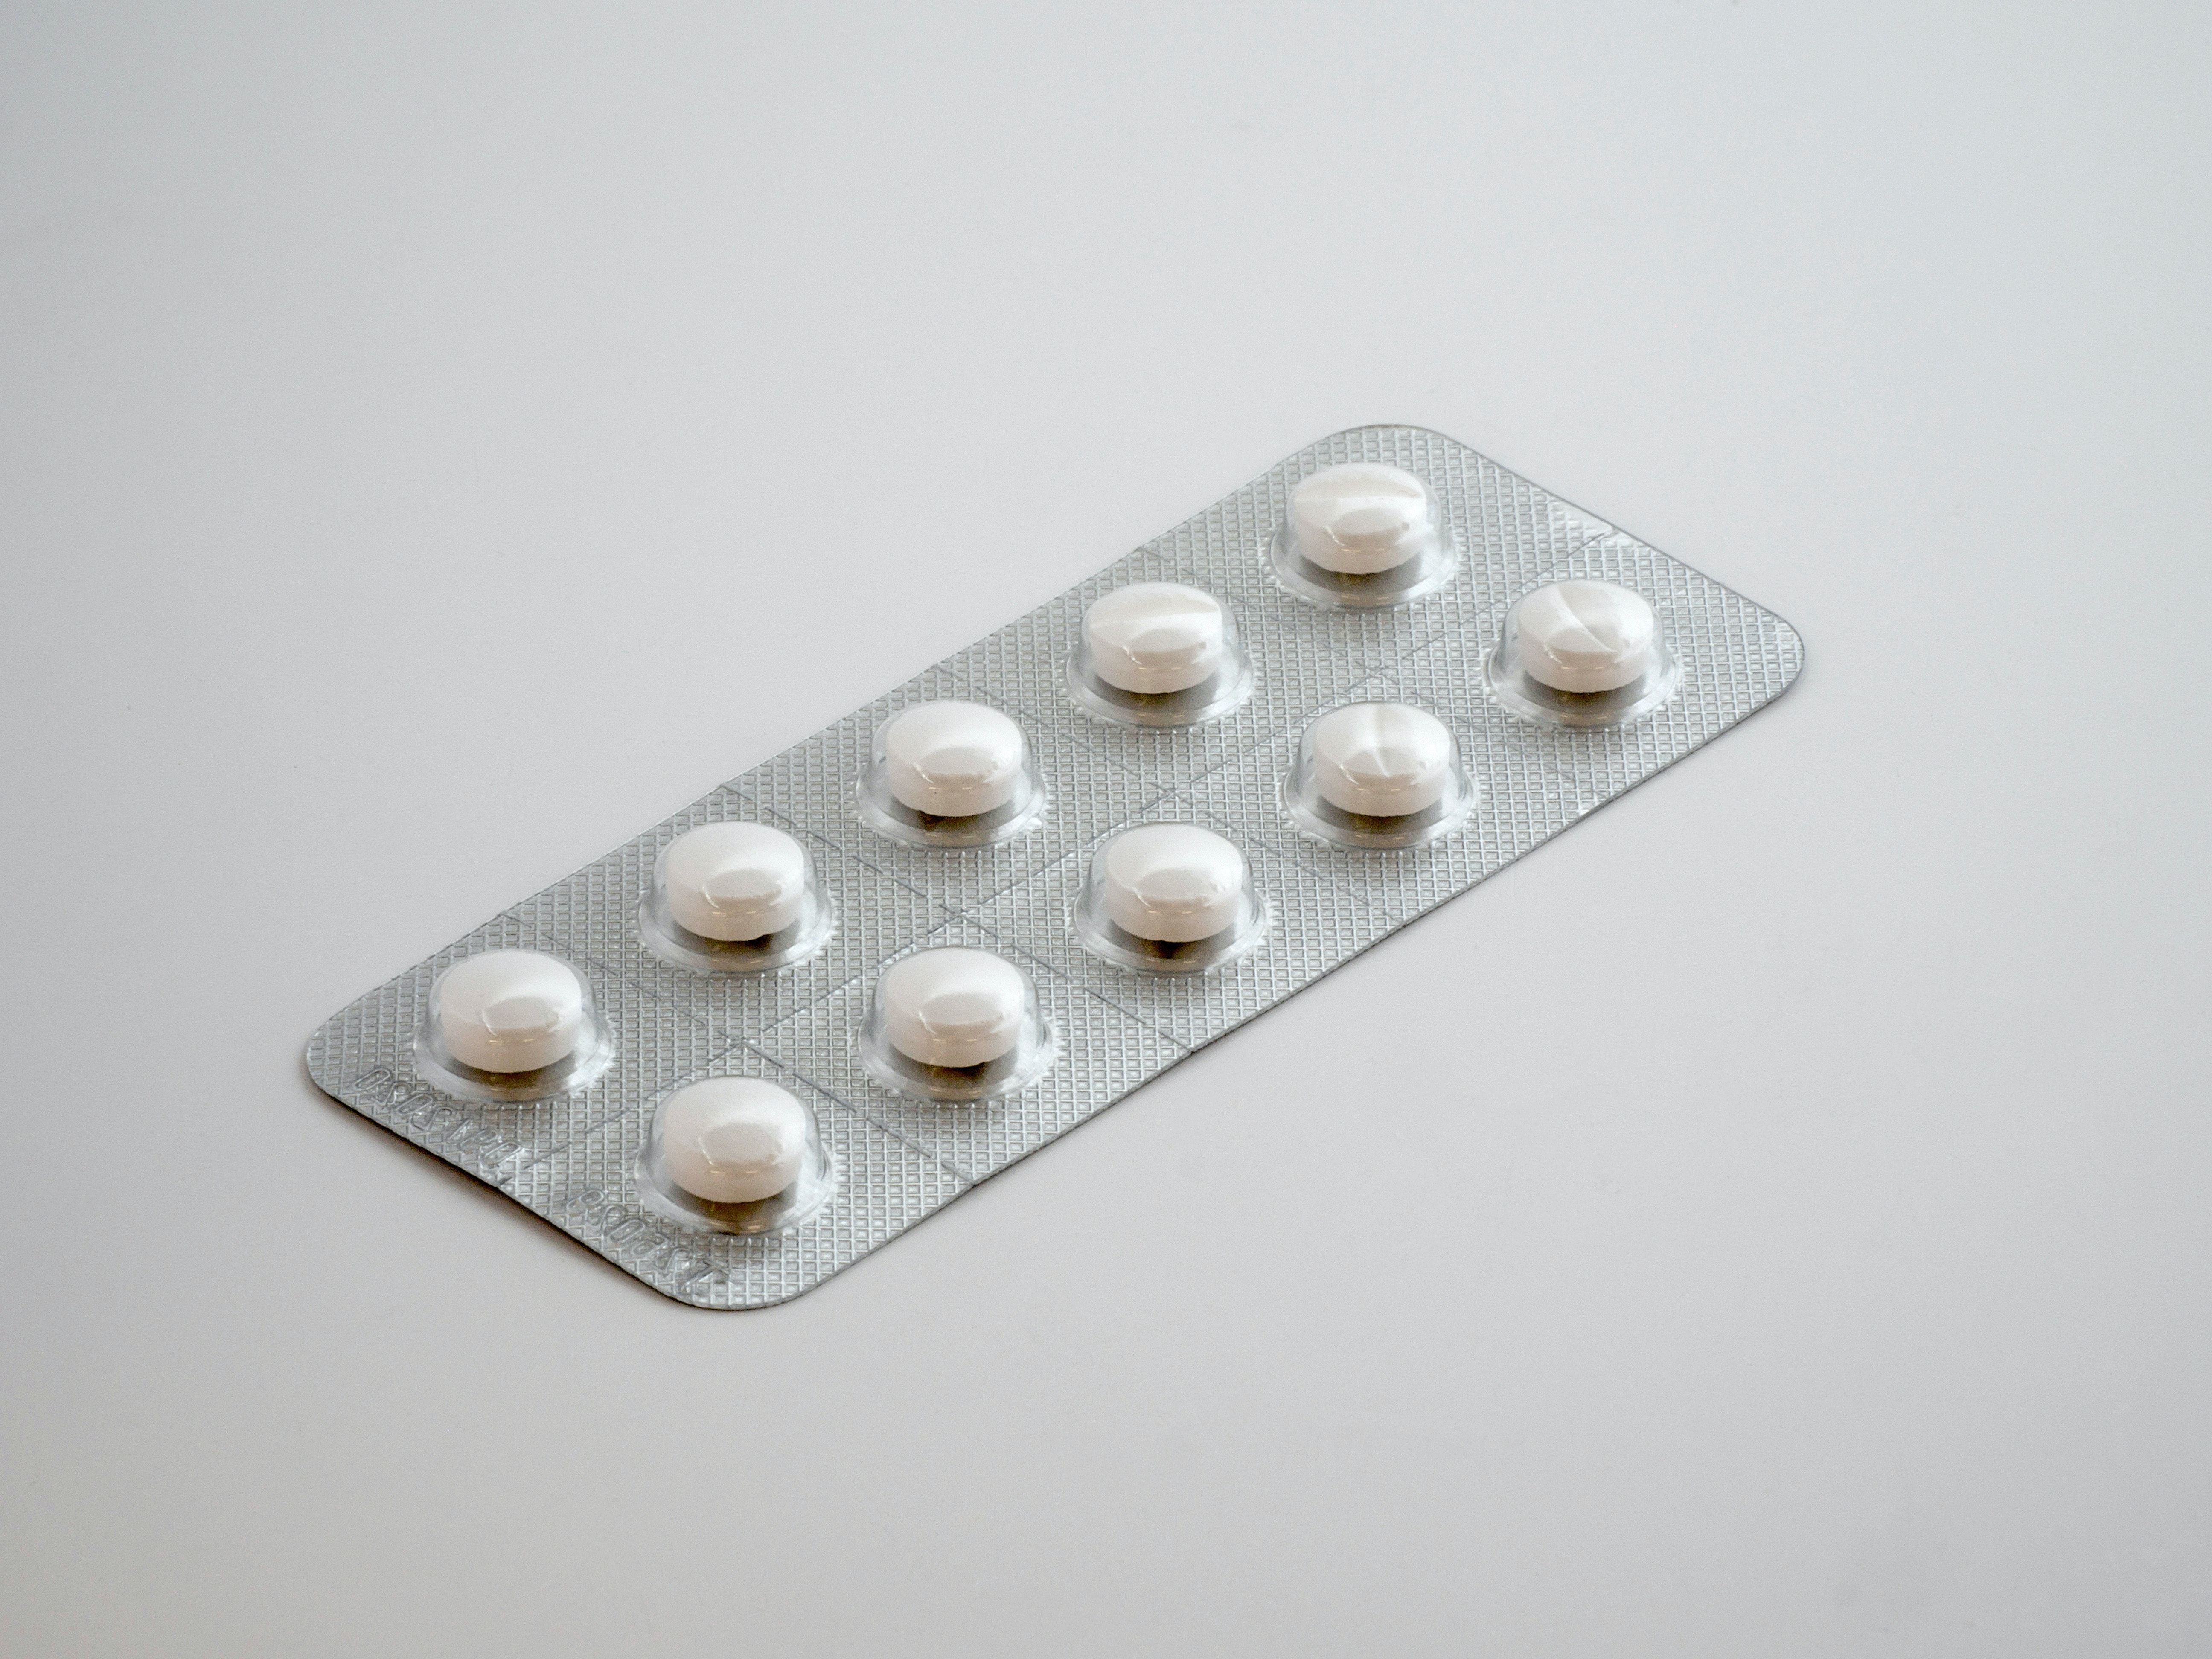 De acordo com o texto, os medicamentos deveriam ser fornecidos em até 48 horas após a prescrição médica e estarem registrados na Agência Nacional de V